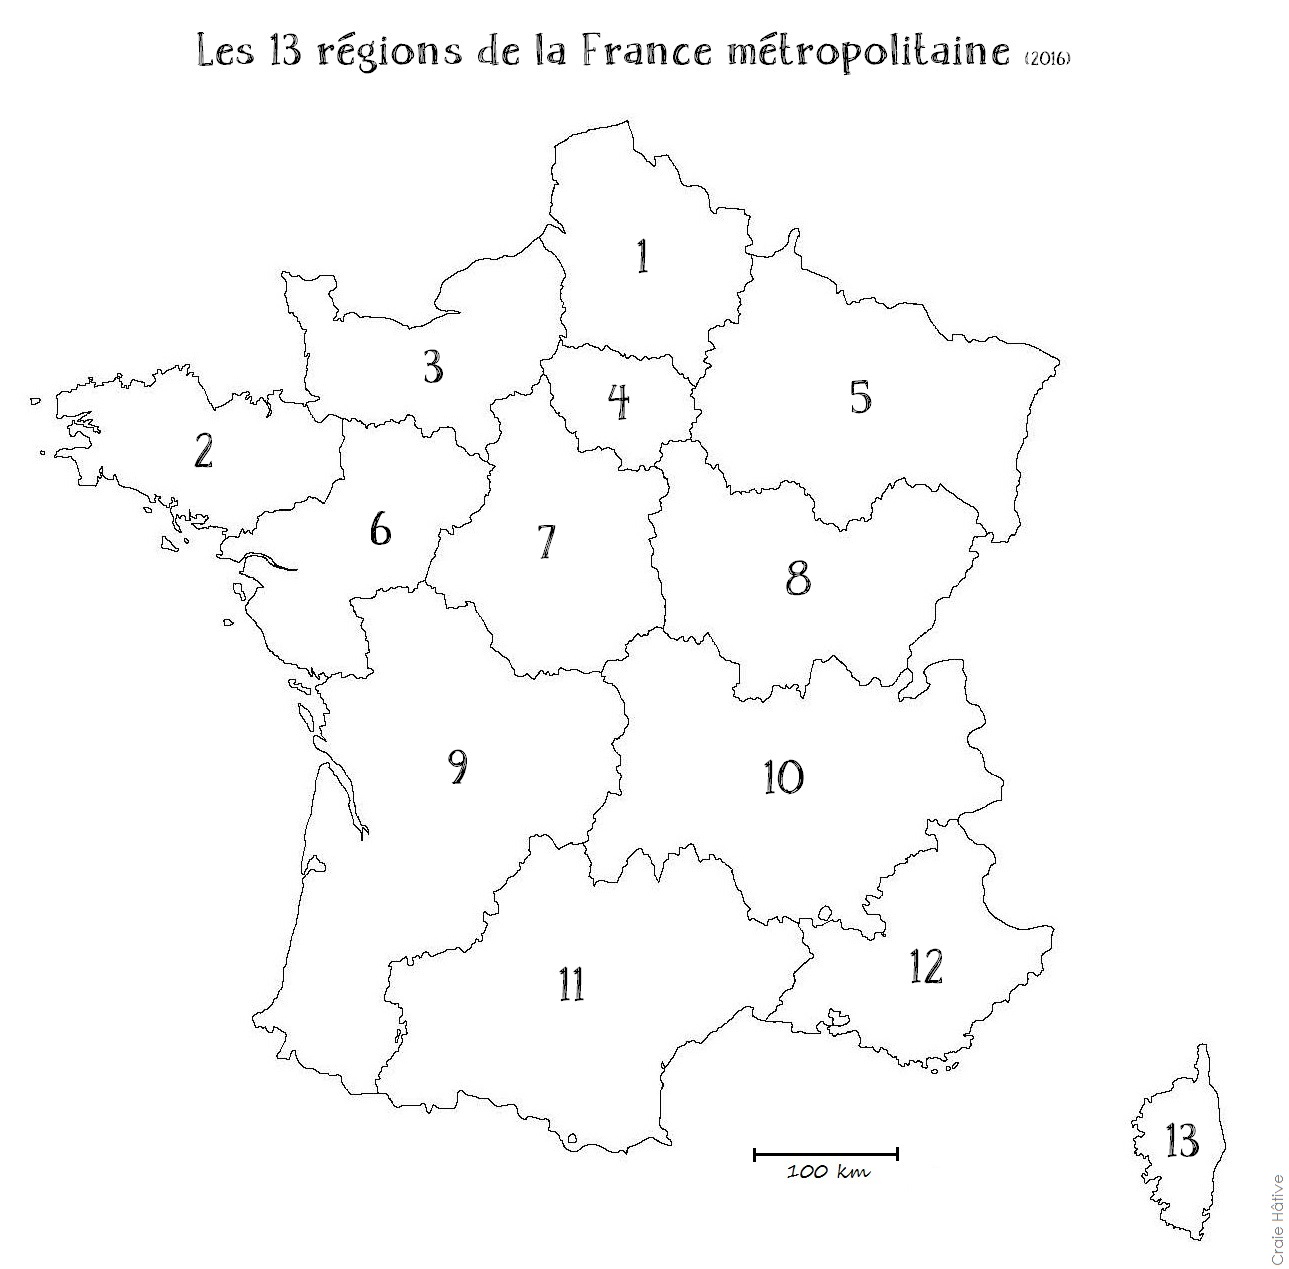 Carte de France vierge PDF. Départements + Régions.